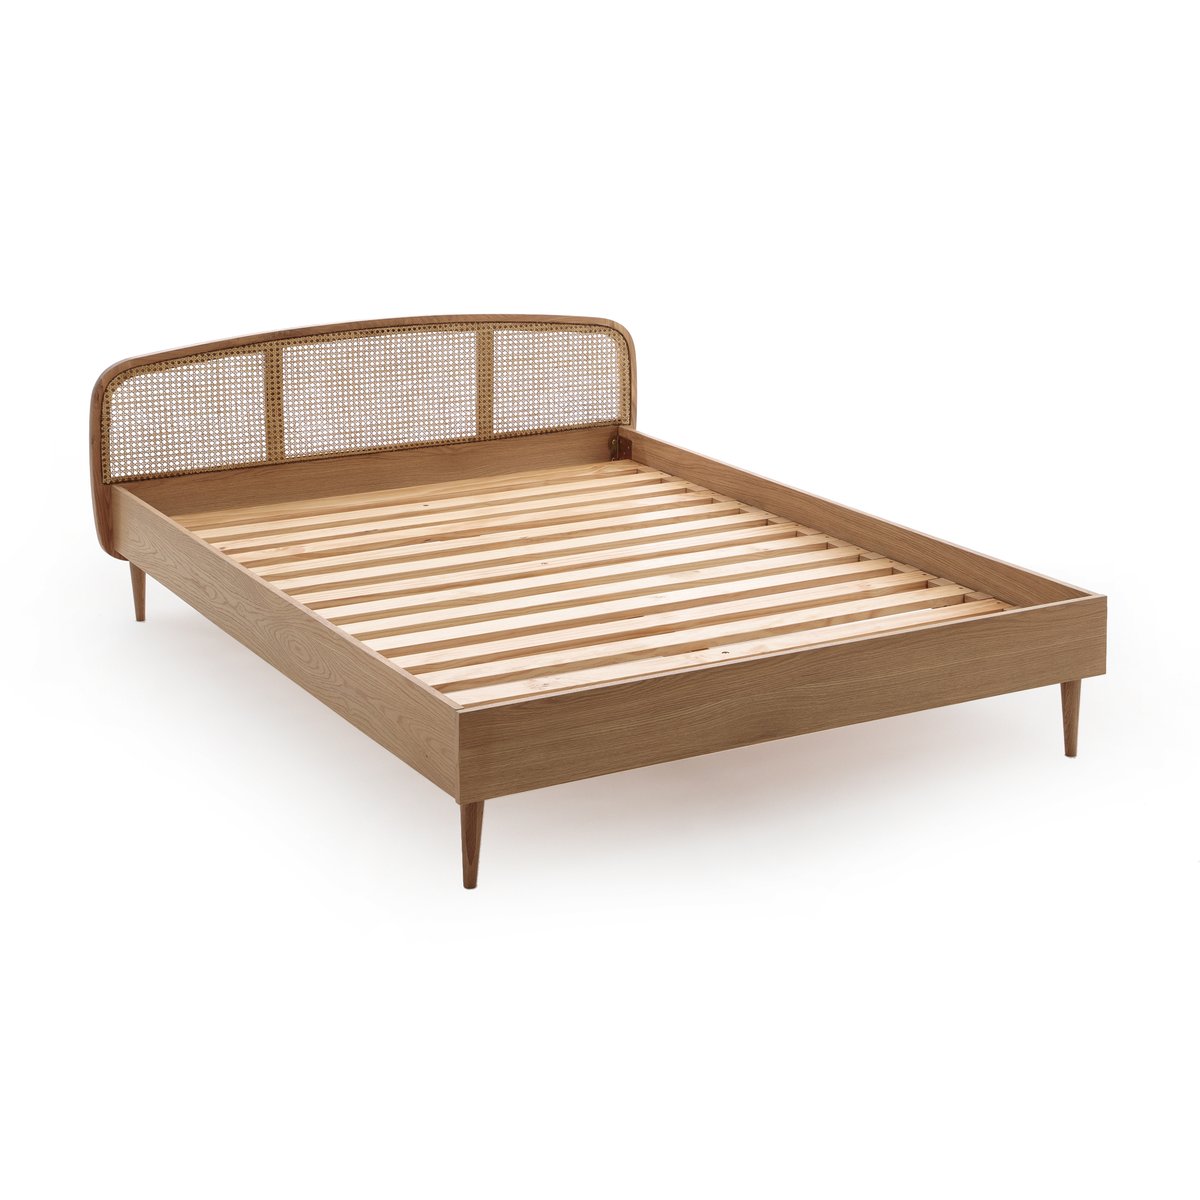 Кровать La Redoute Из дуба и плетеного материала с реечным основанием Buisseau 140 x 190 см каштановый, размер 140 x 190 см - фото 3